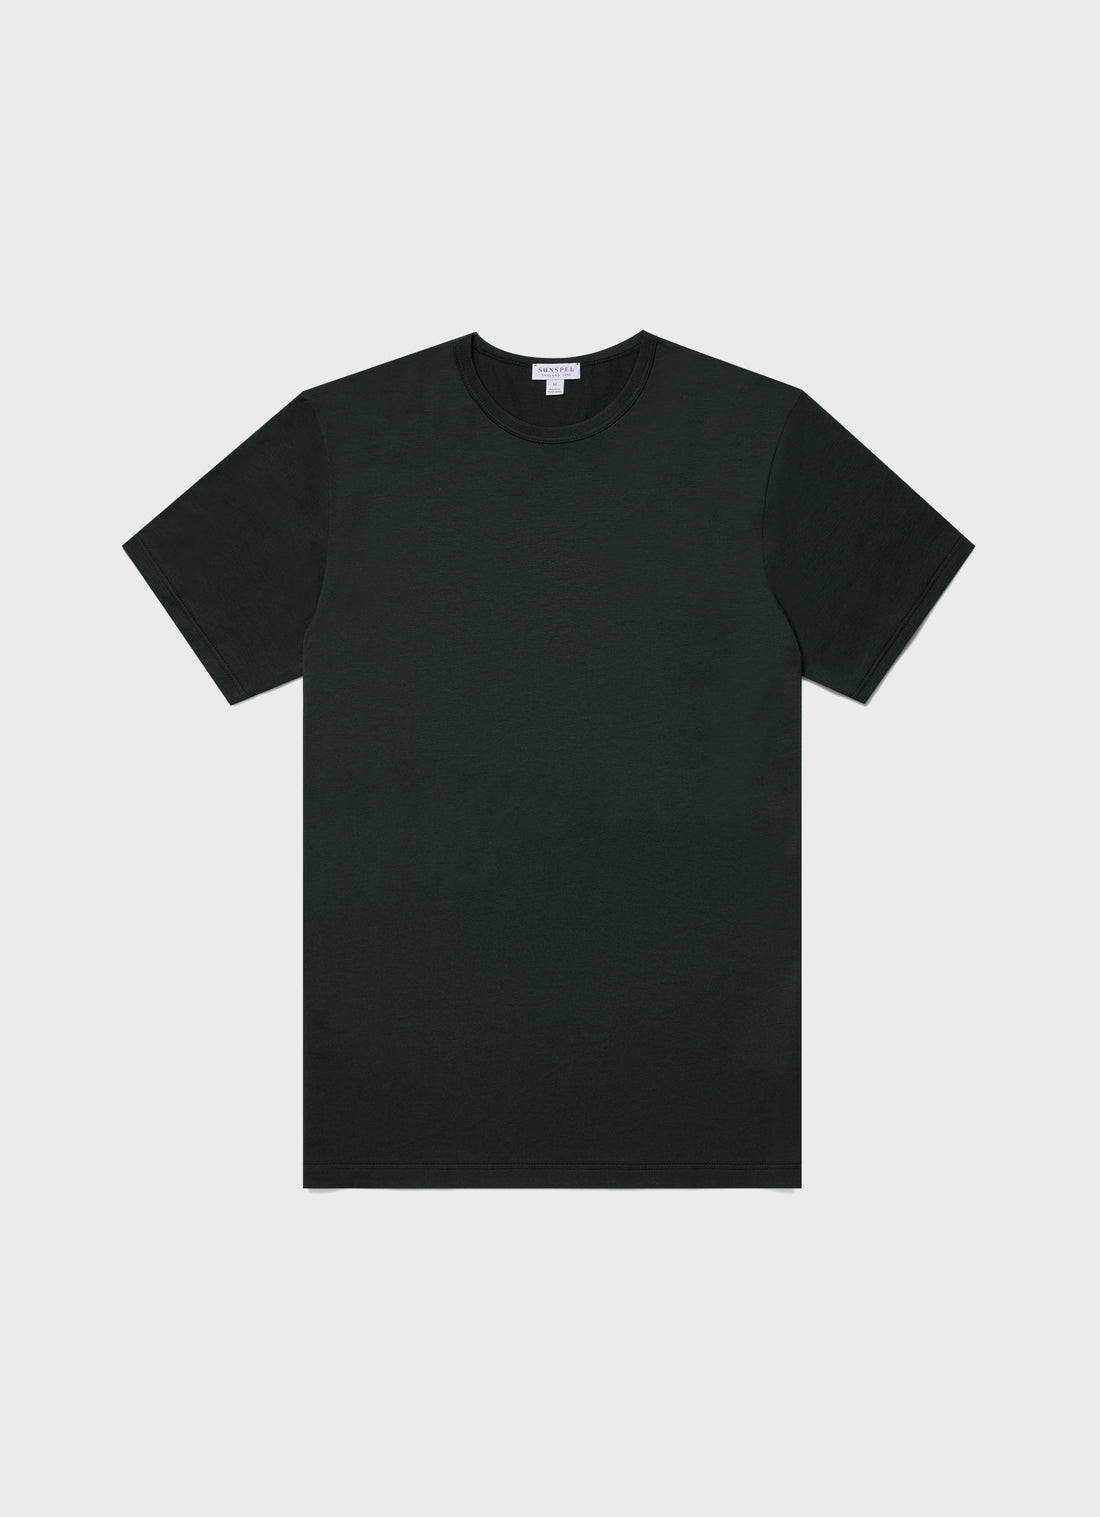 Men's Classic T-shirt in Seaweed